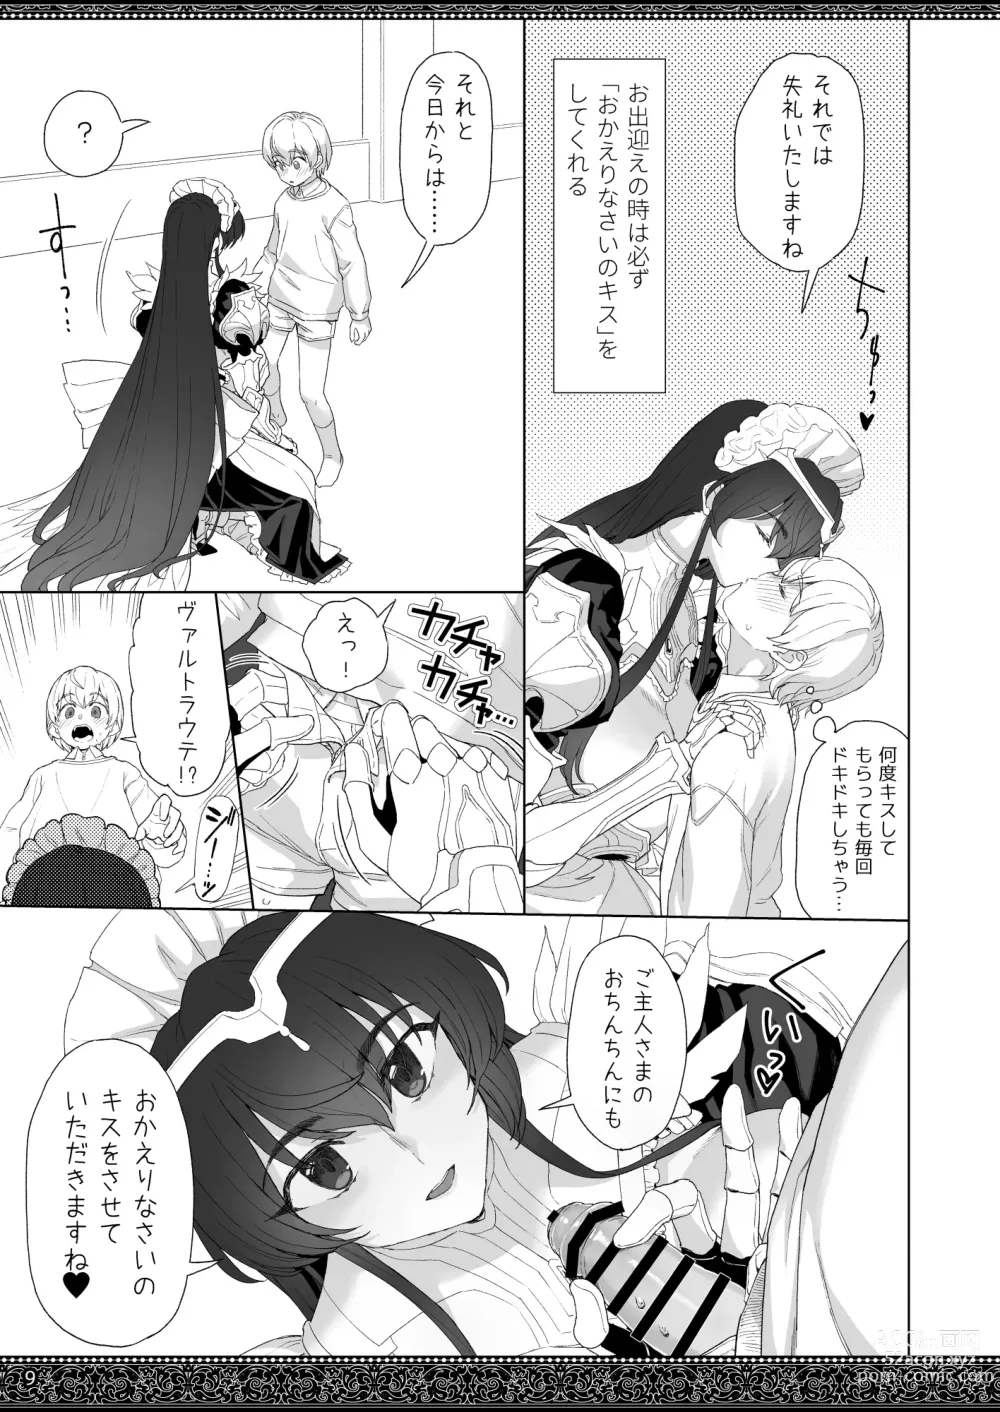 Page 9 of doujinshi Tenjousekai no Maid-tachi 2